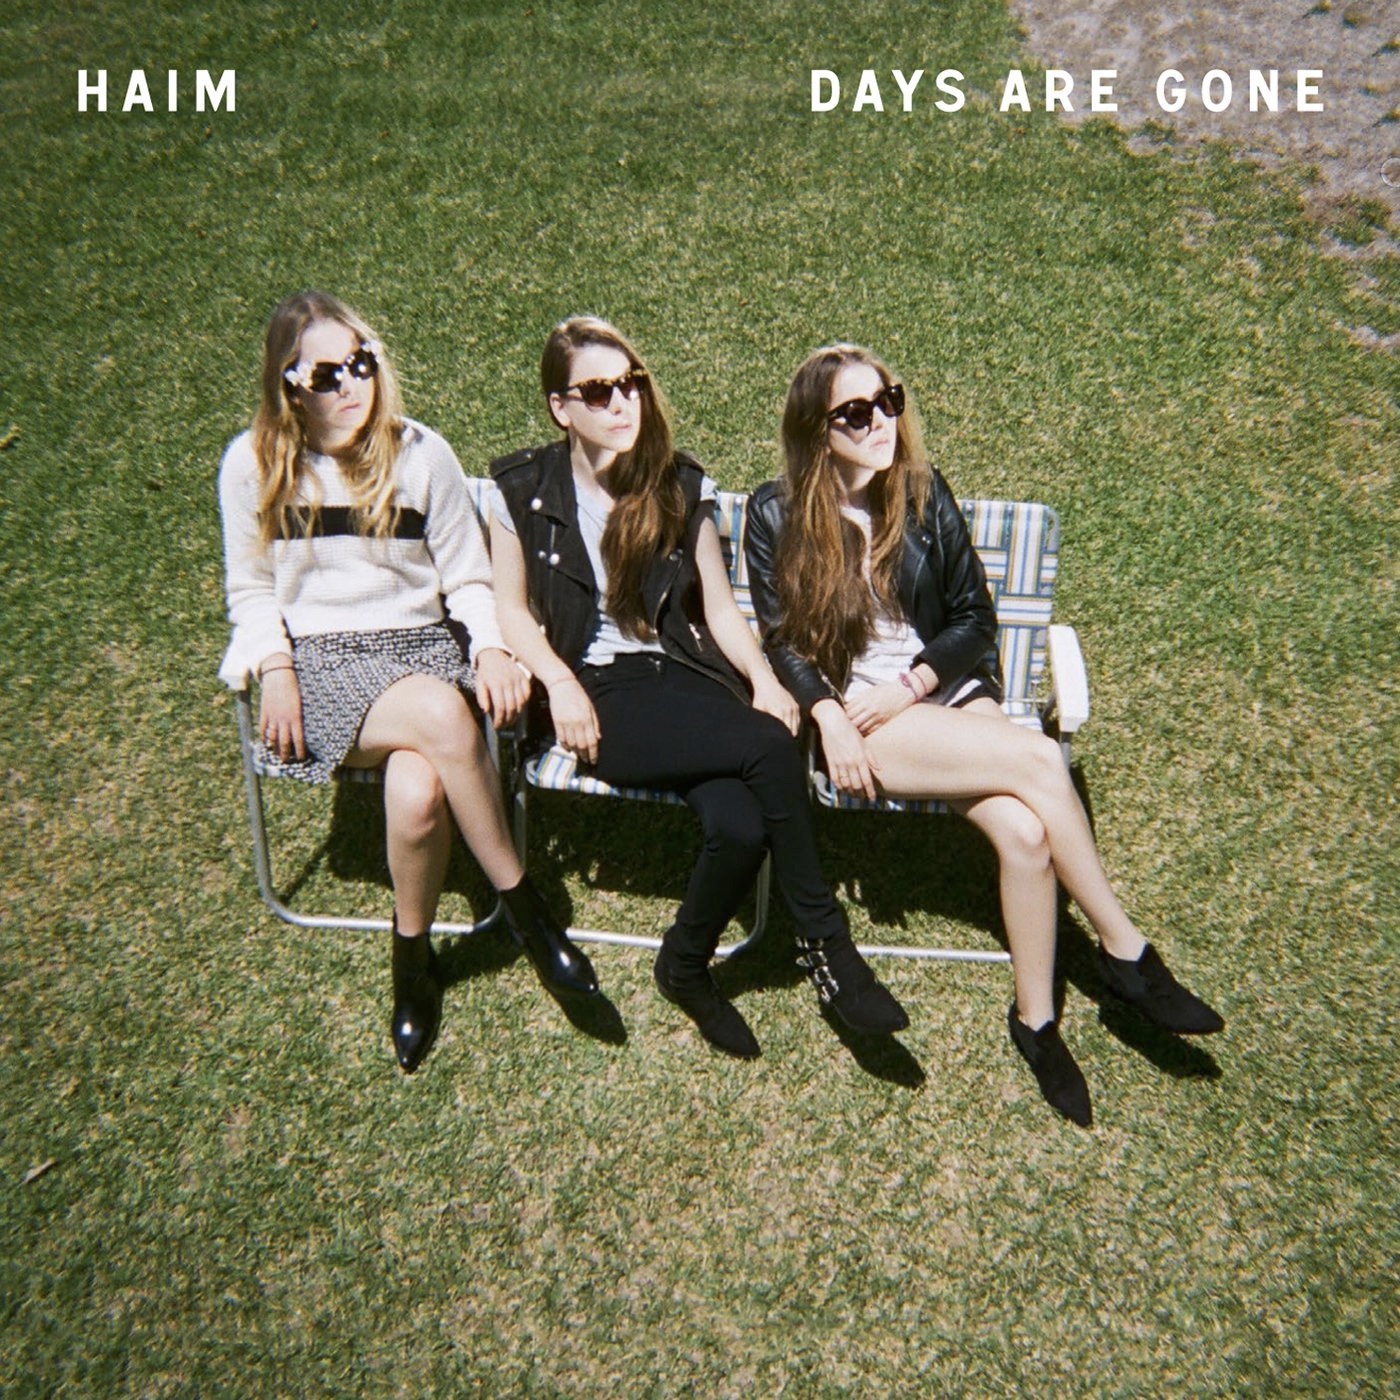 HAIM - Days Are Gone (2013) [HDTracks FLAC 24bit/96kHz]